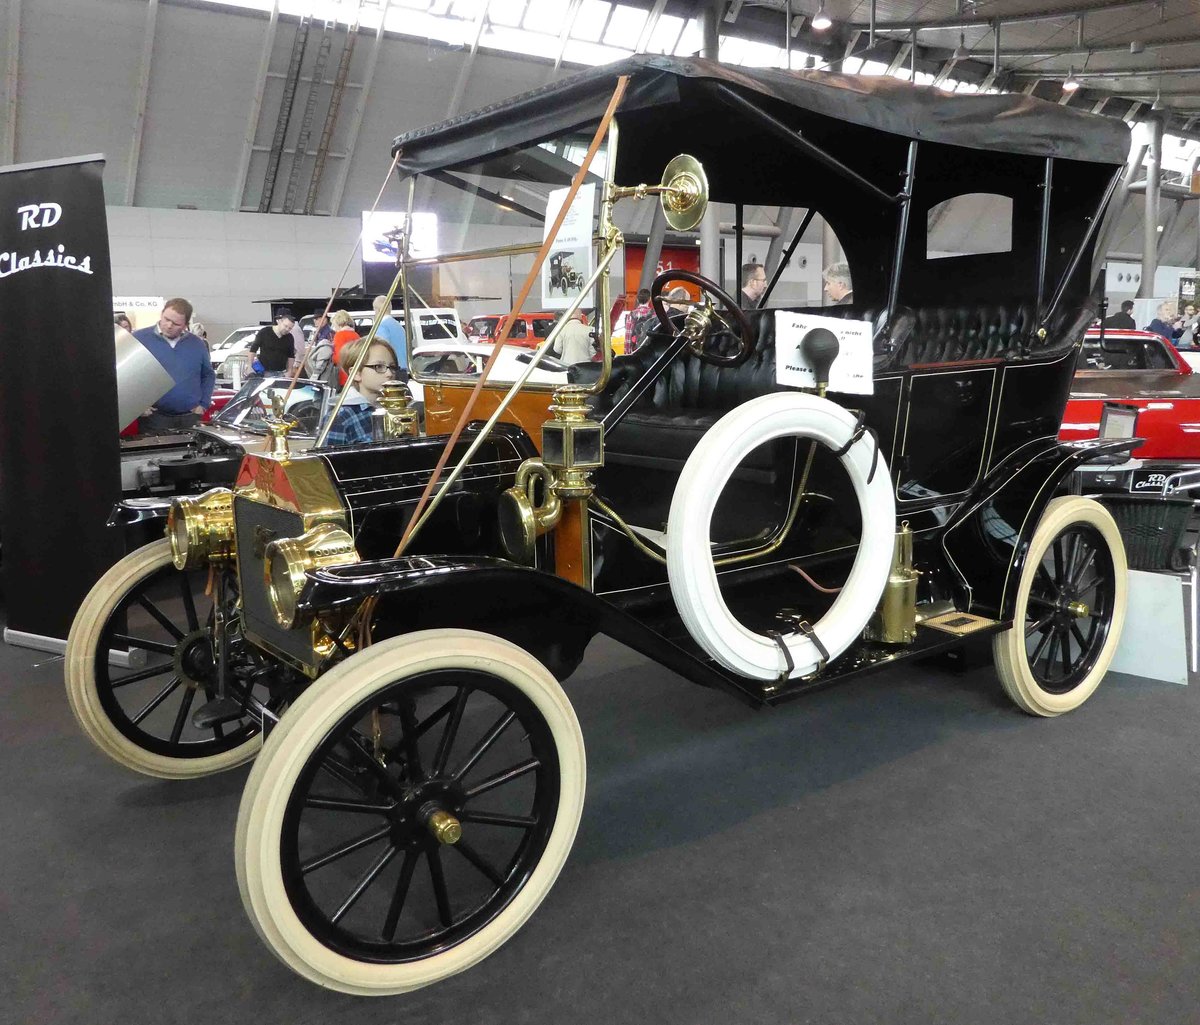 =Ford T, Bj. 1912, 2900 ccm, 20 PS, sucht einen neuen Besitzer bei den Retro Classics in Stuttgart, 03-2019